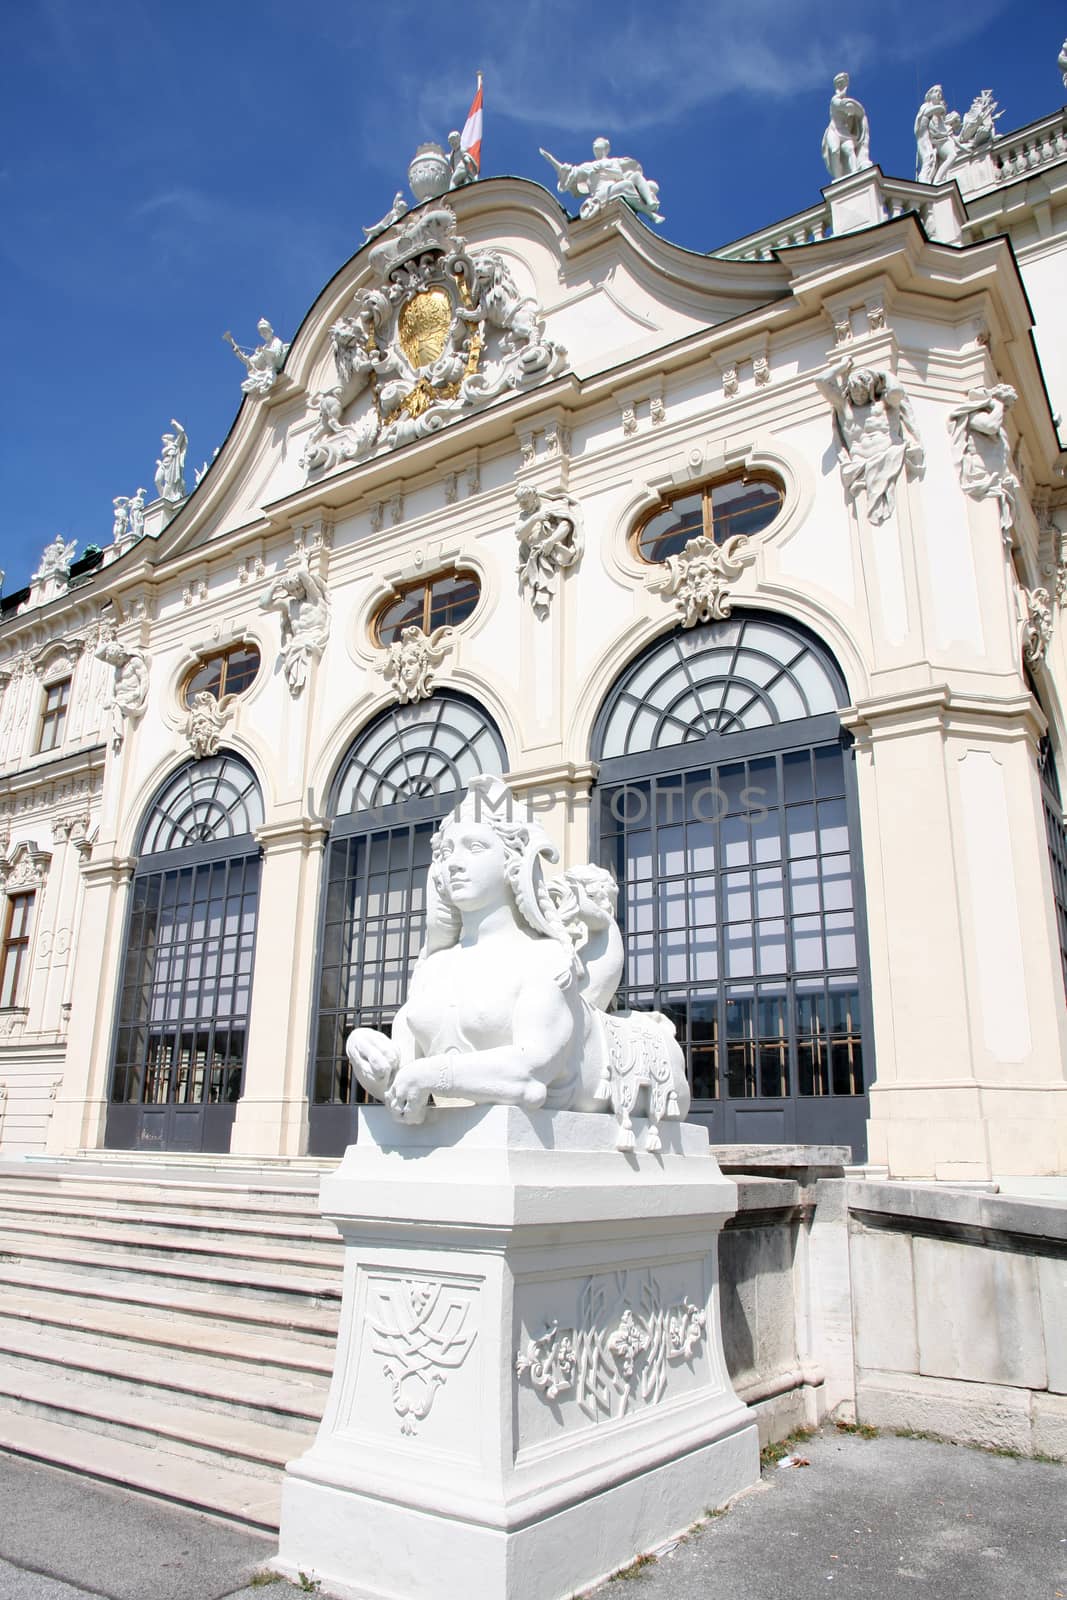 Belvedere in Vienna, Austria by vladacanon